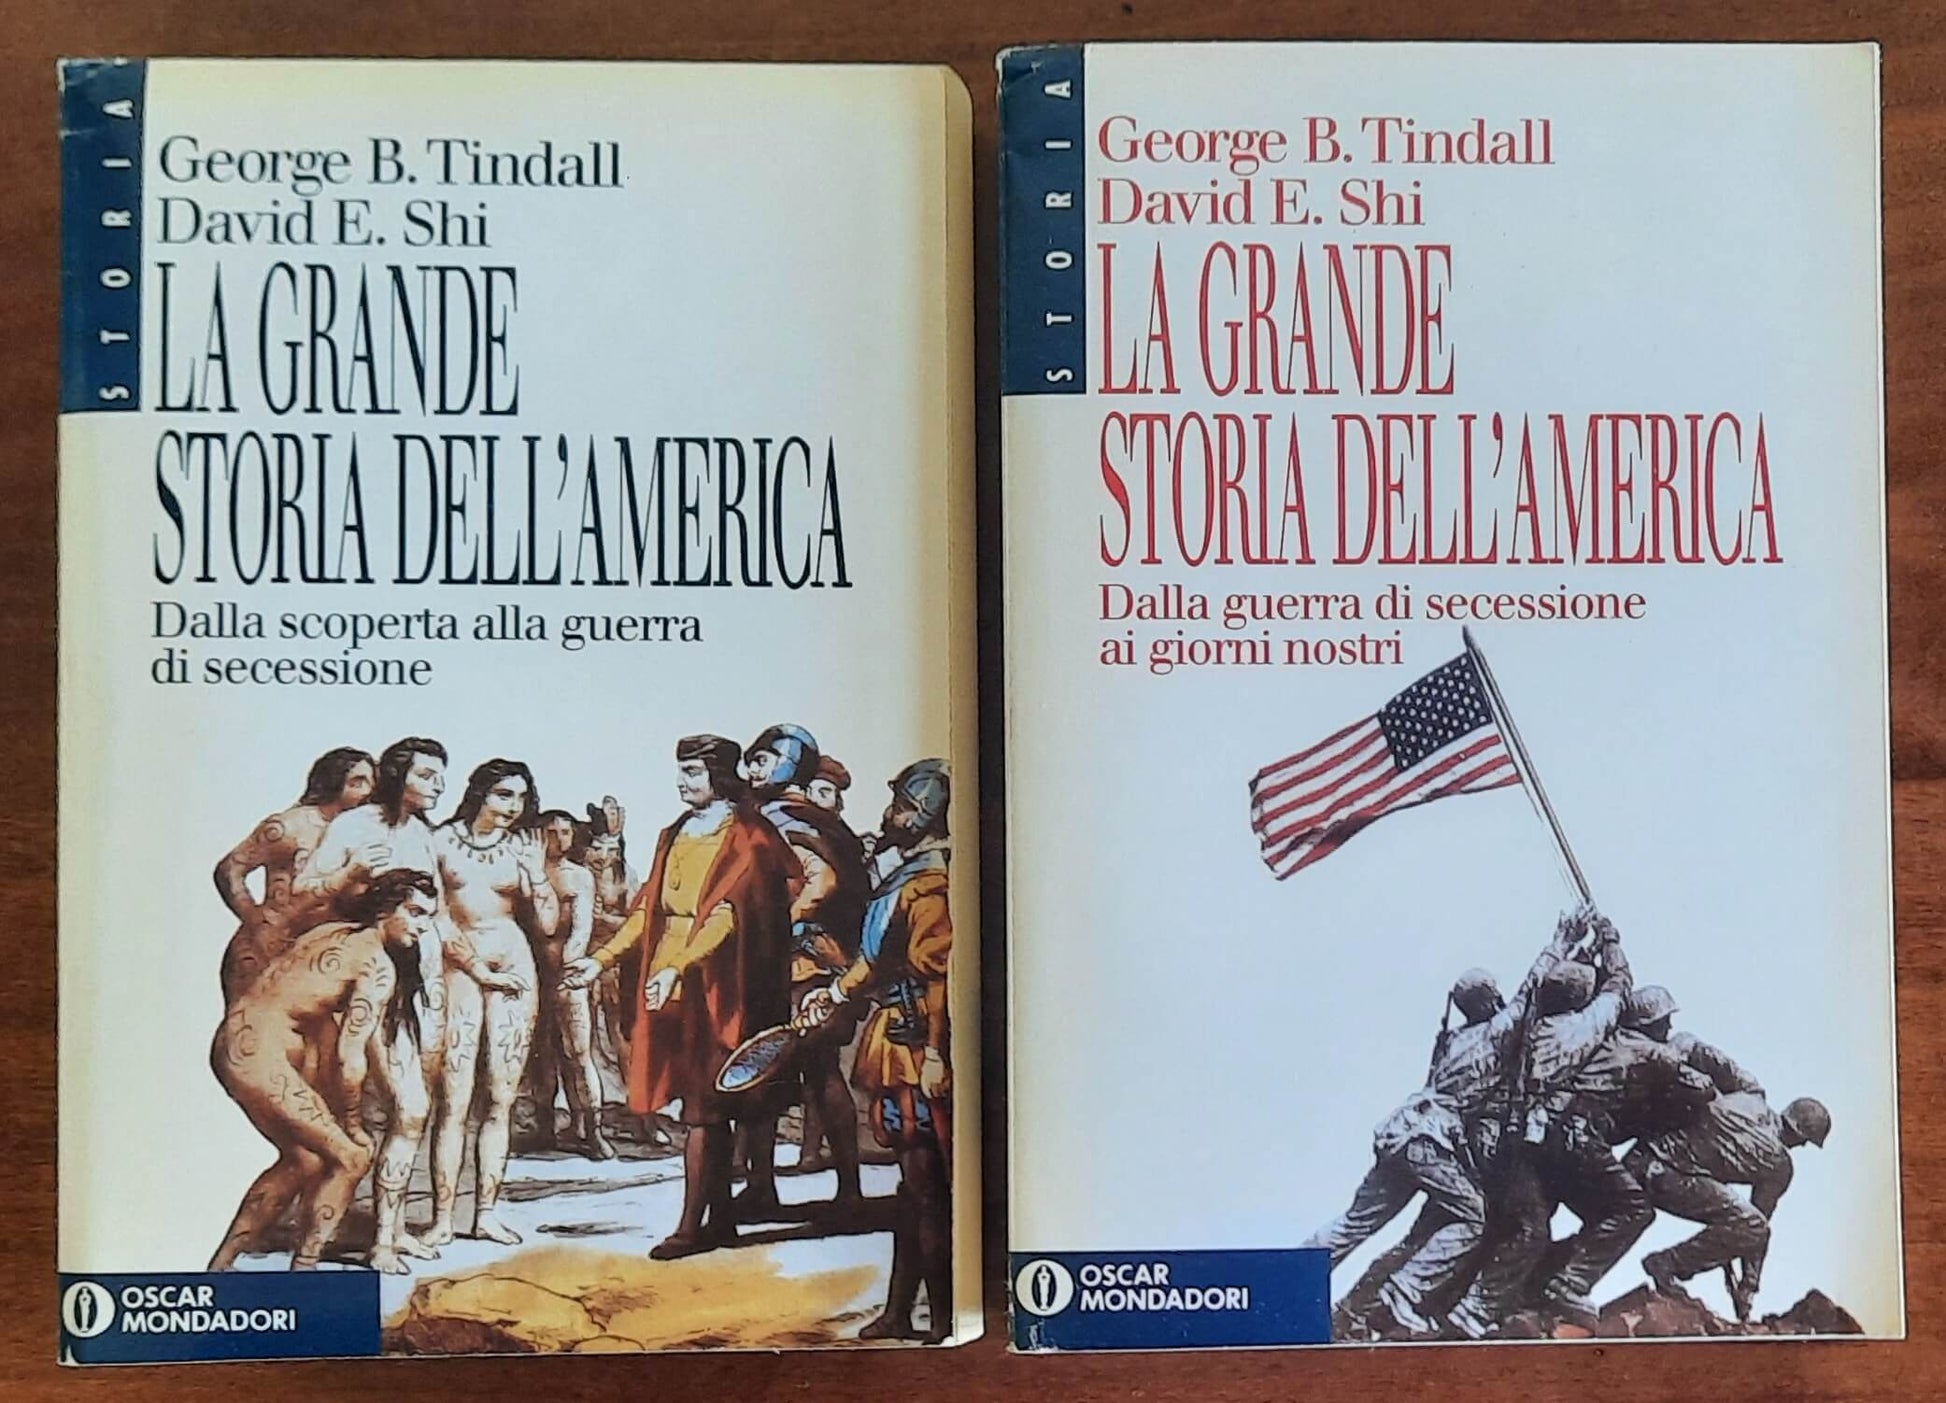 La grande storia dell’America - in 2 vol. - Mondadori Oscar